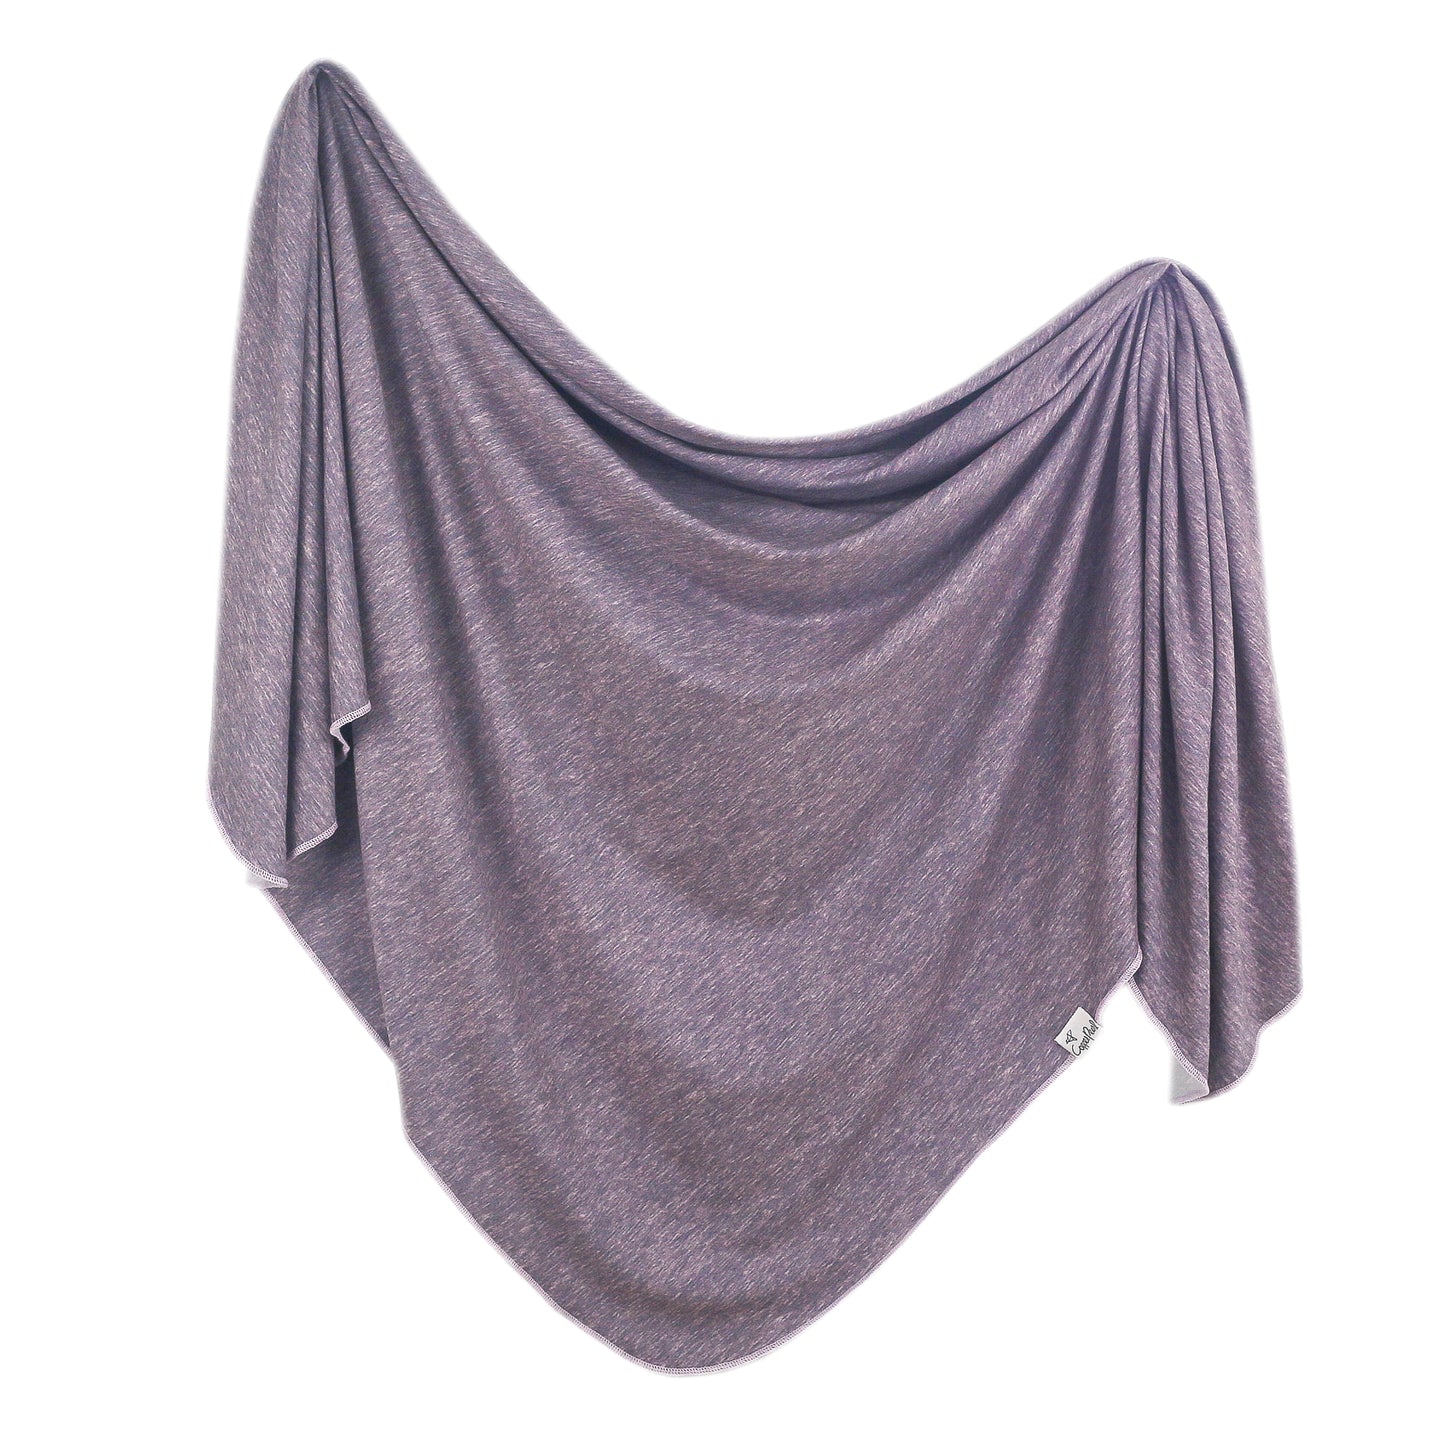 Copper Pearl Knit Swaddle Blanket - Violet